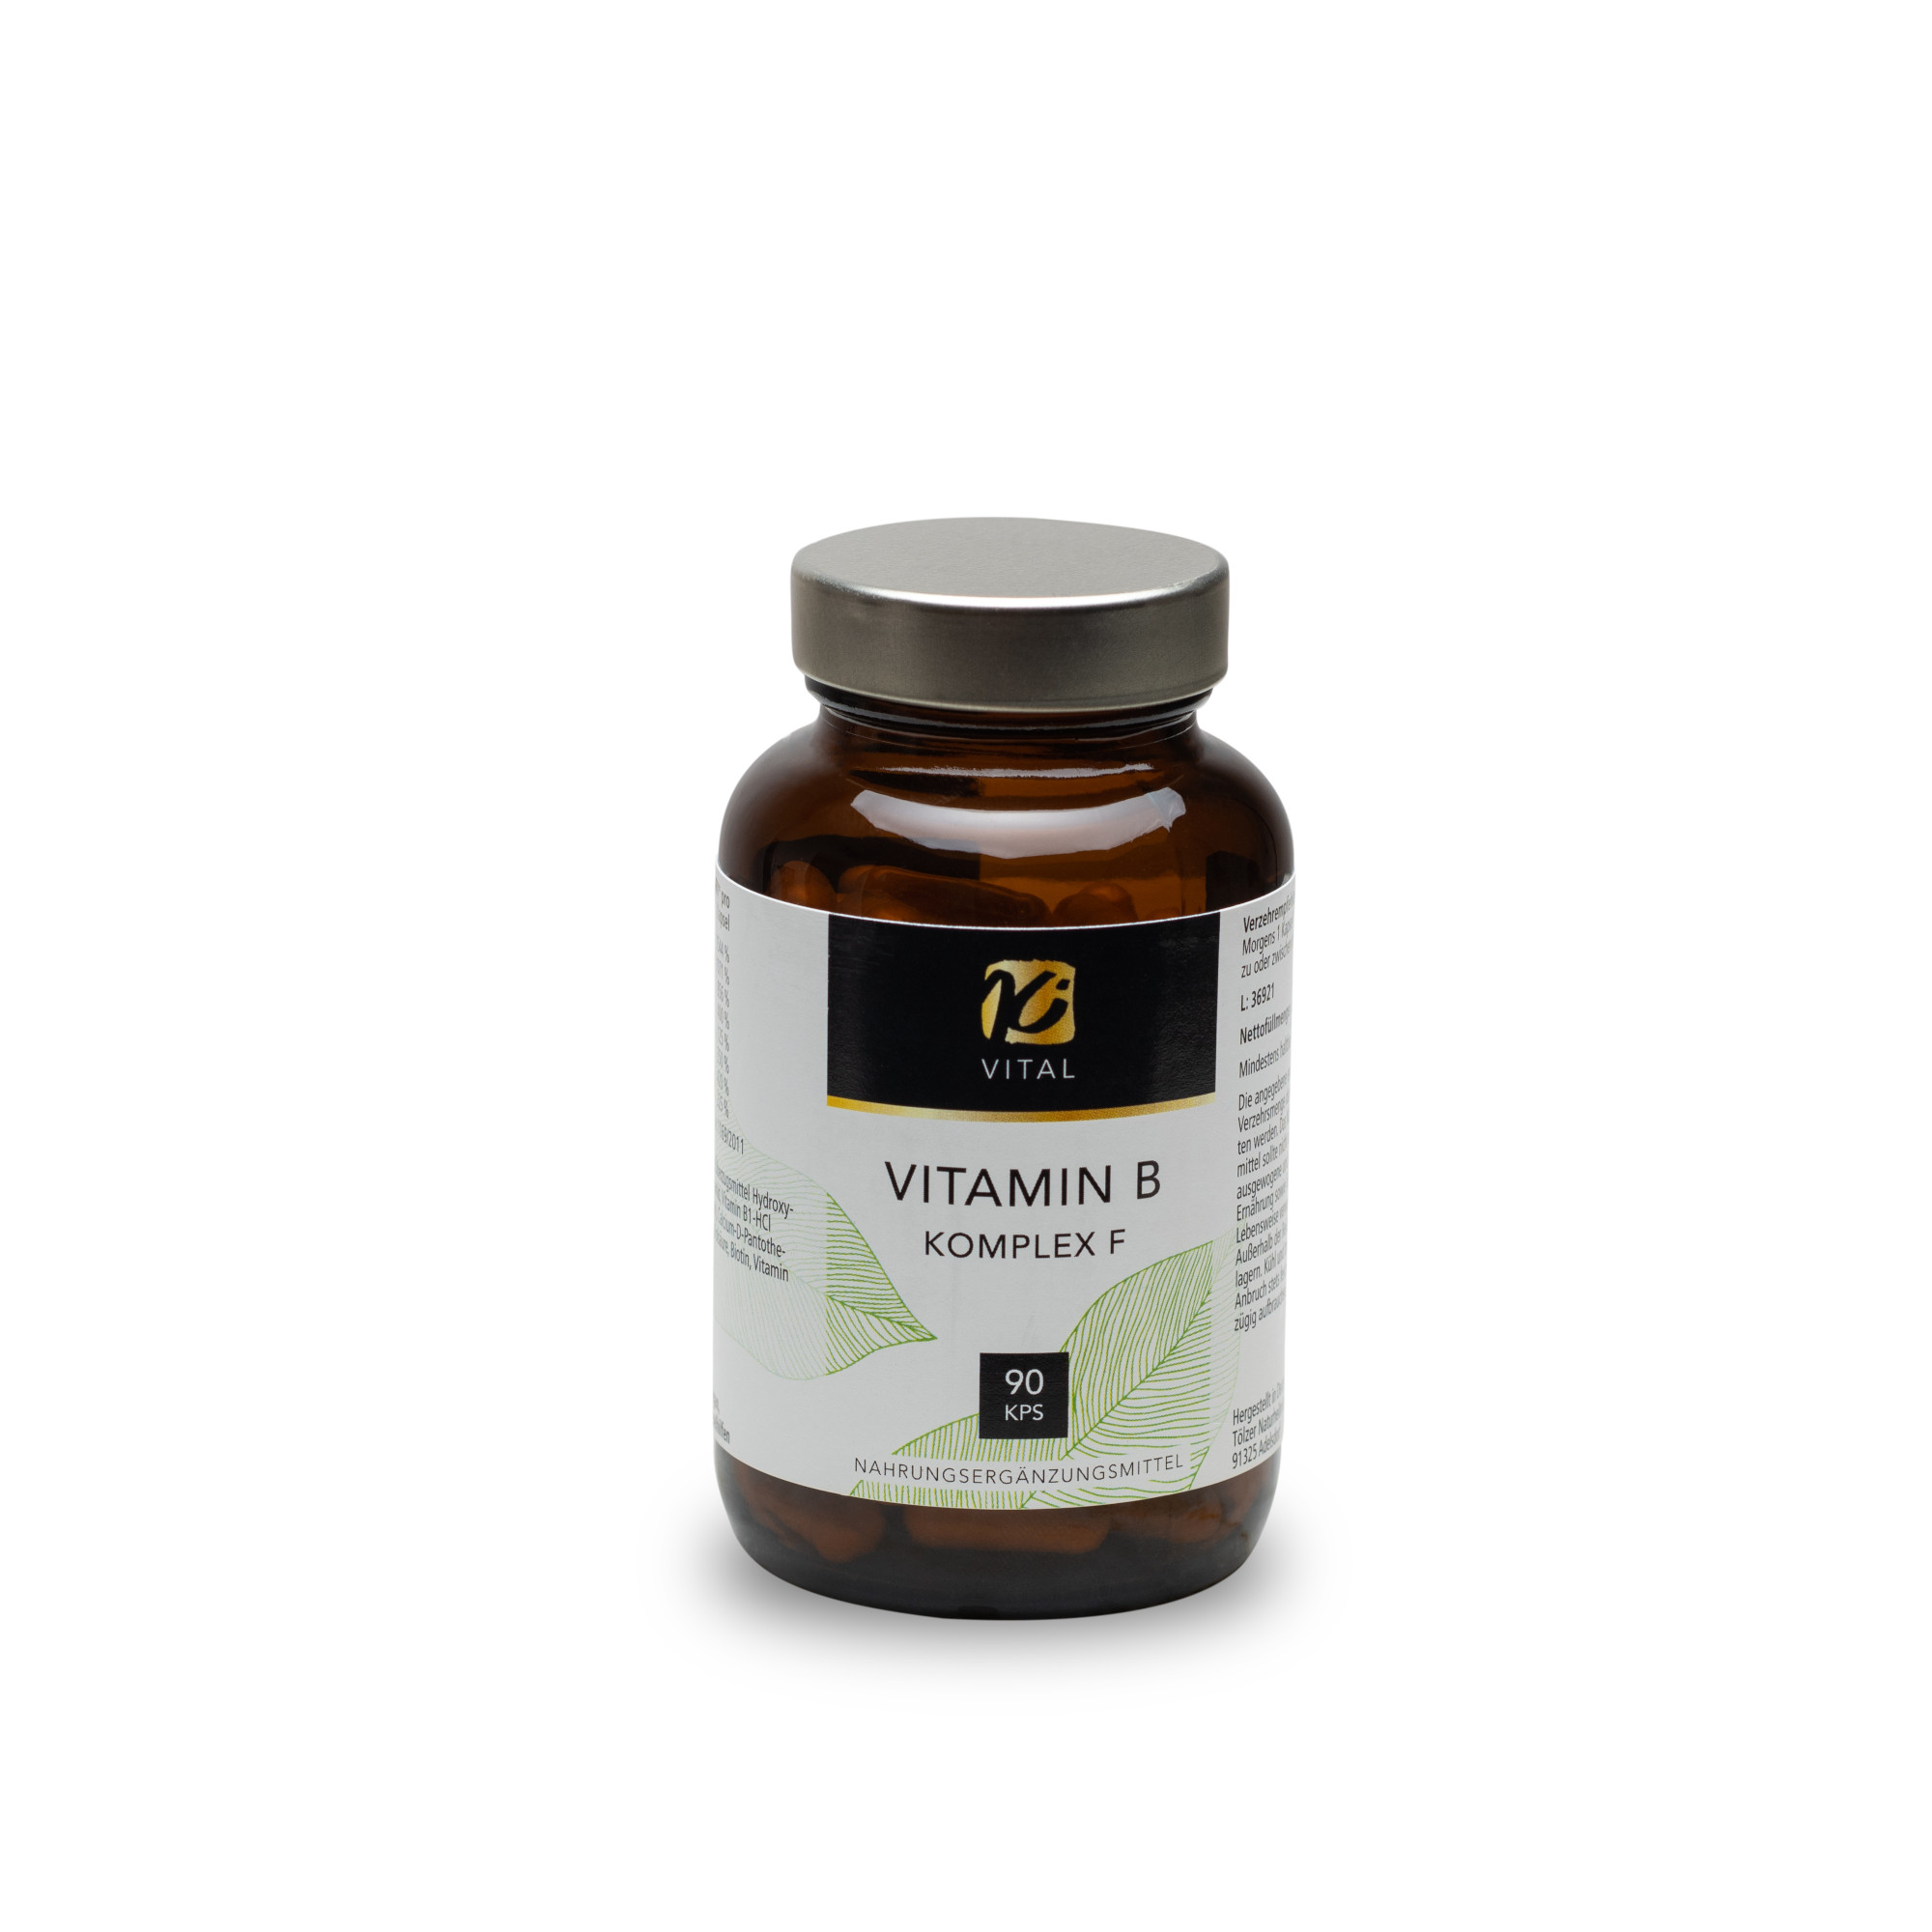 KiVital Vitamin B Komplex F